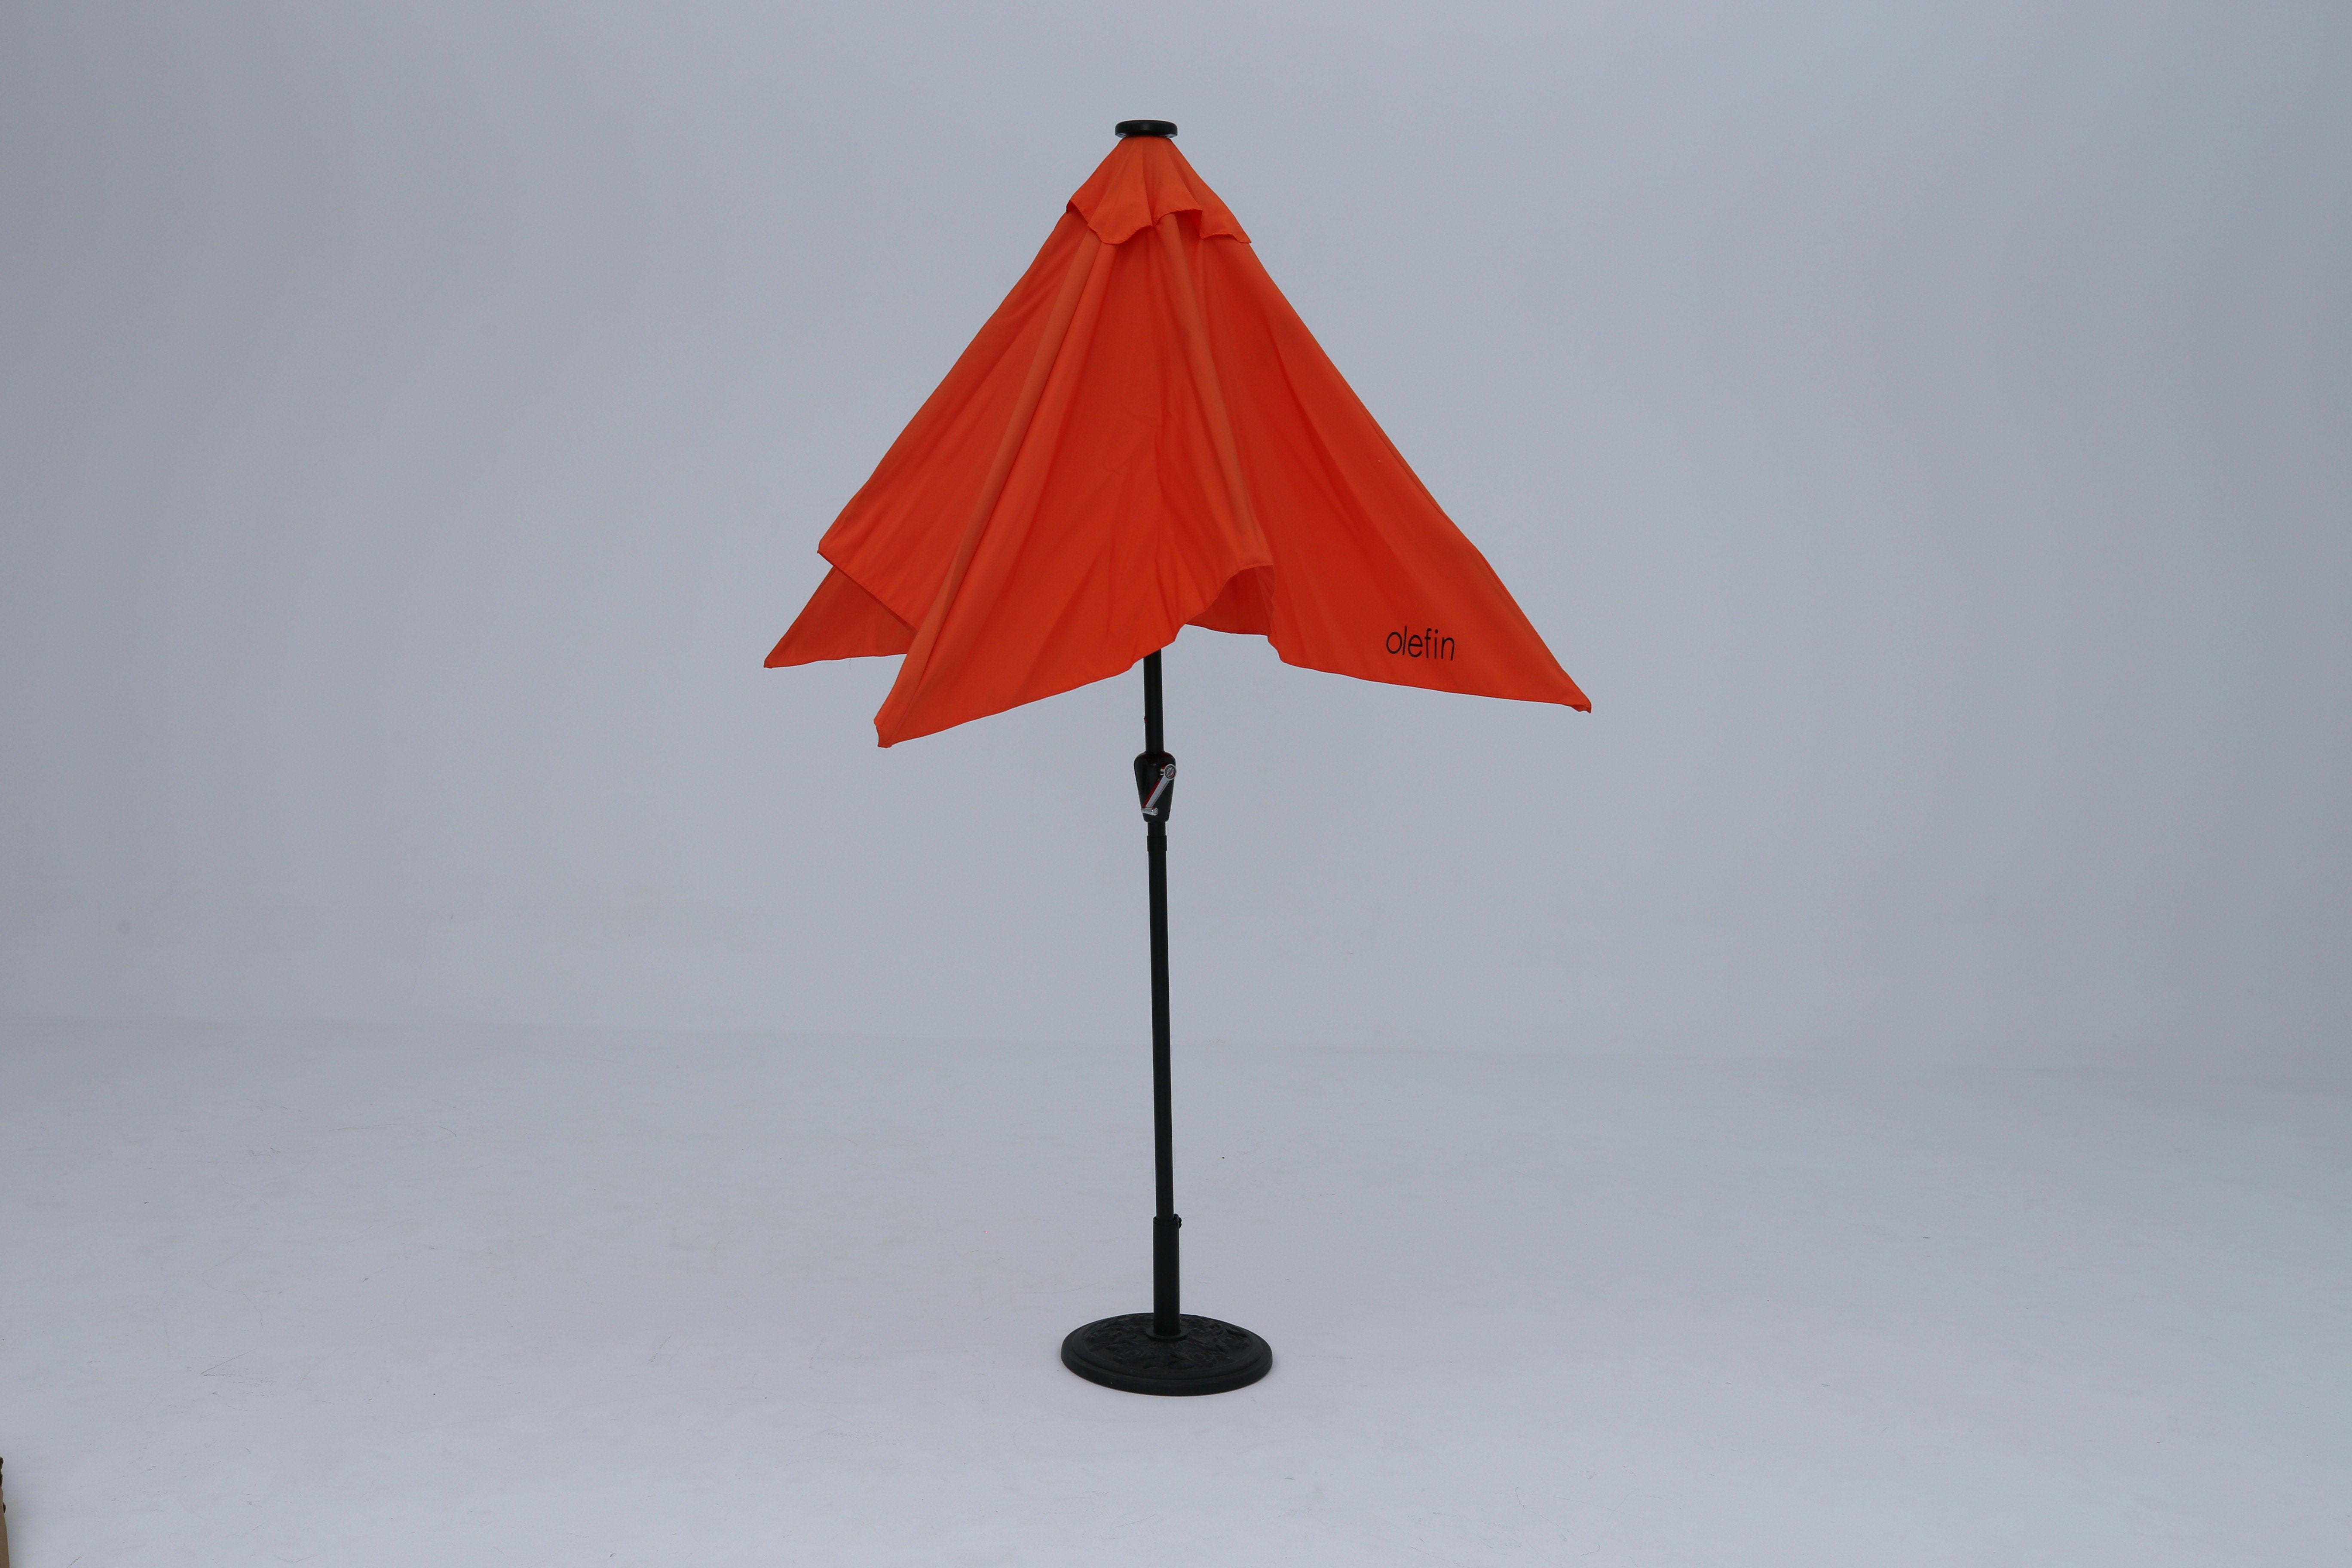 Olefin Patio Umbrella Half Round Outdoor Umbrella - ABC-CANOPY